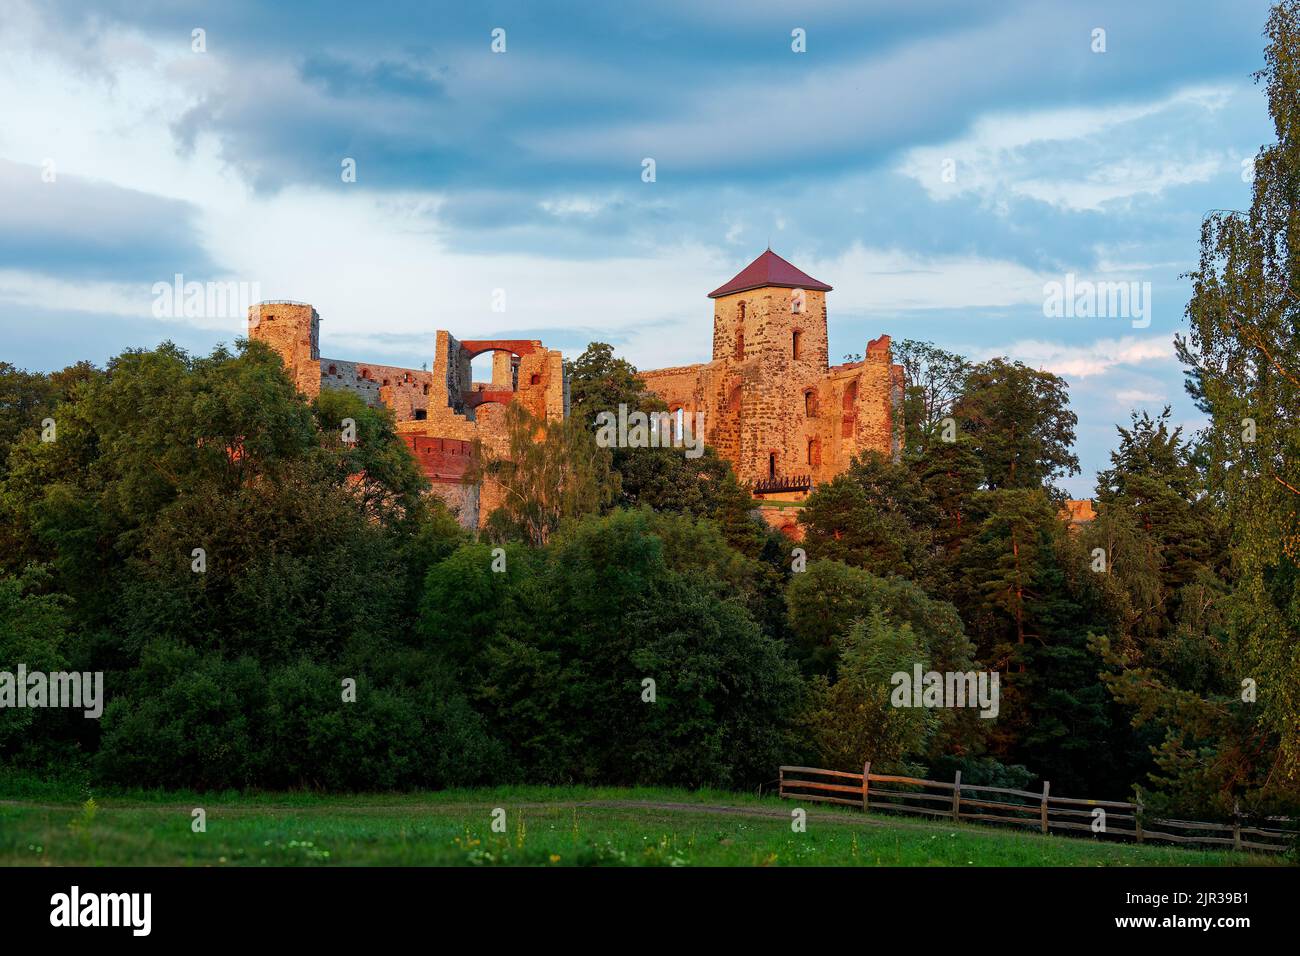 Le château de Tenczyn est un château médiéval dans le village de Rudno dans le Jura polonais, en Pologne, pillé et brûlé par les forces suédoises-Brandenburgiennes, se dresse sur le rem Banque D'Images